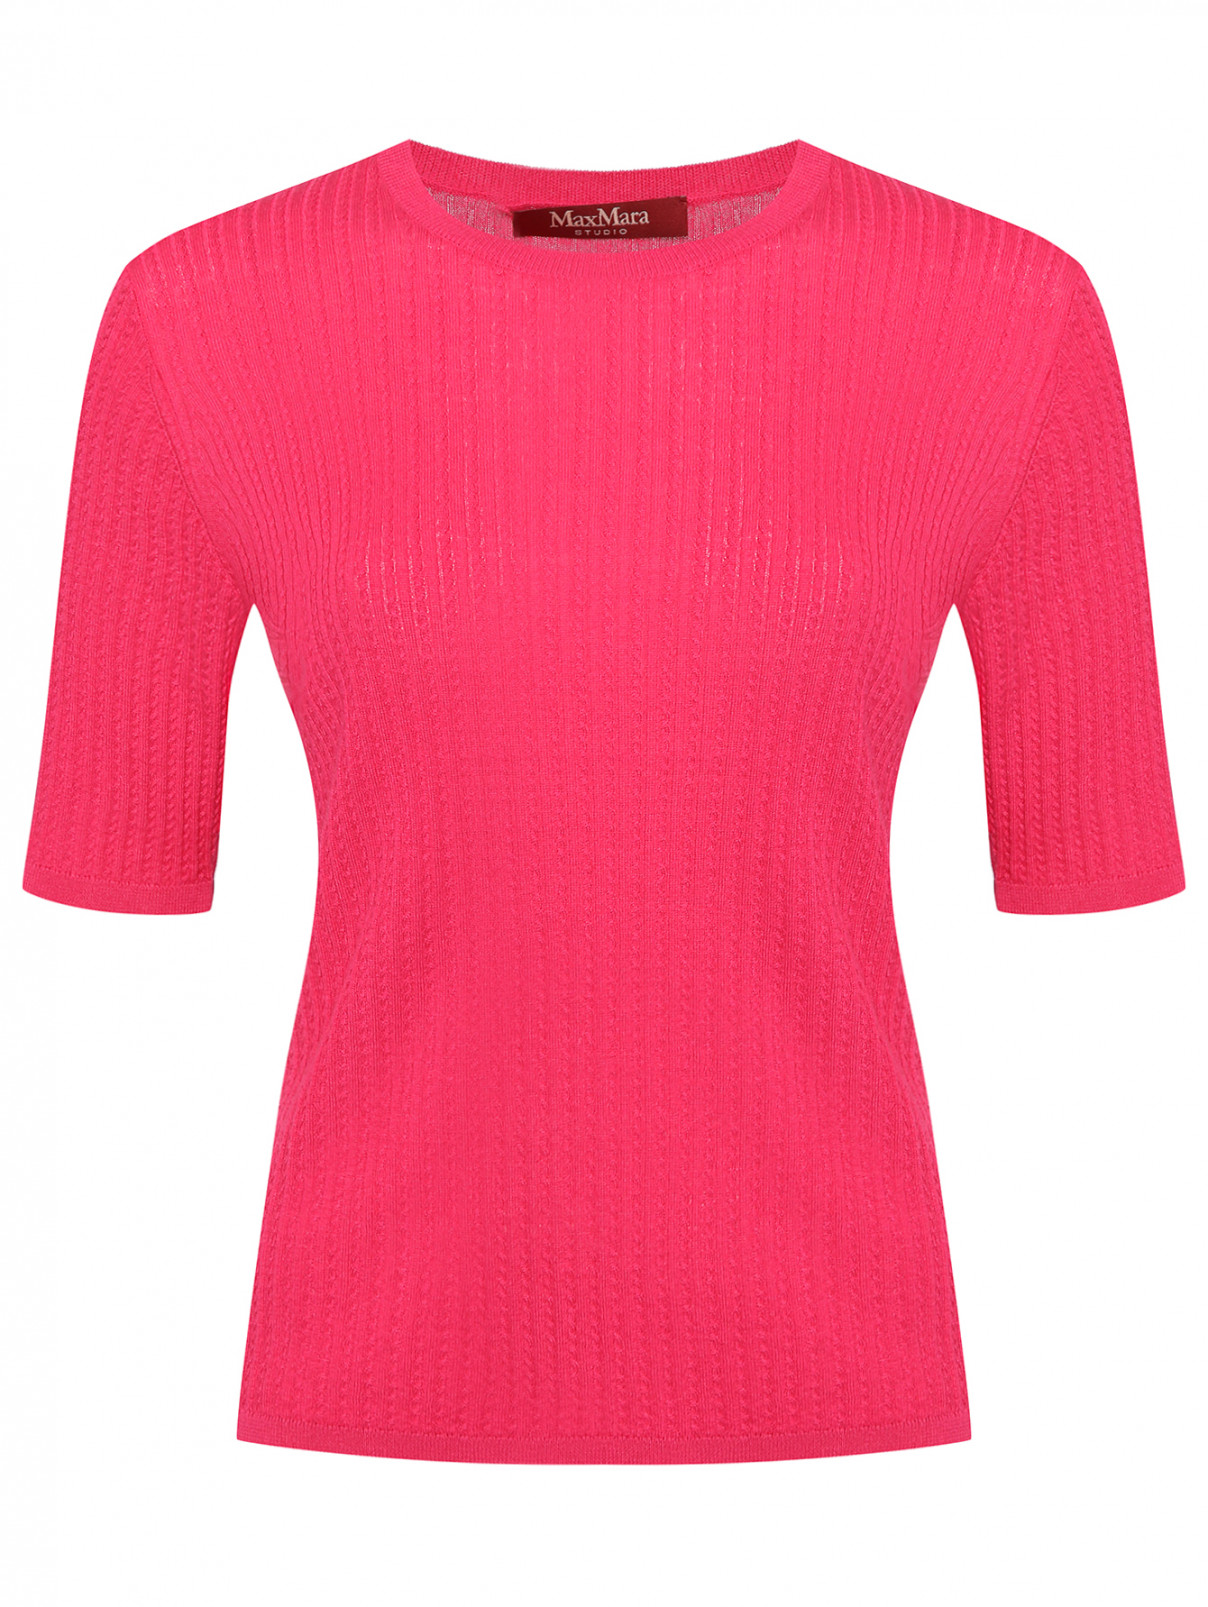 Джемпер из шерсти и шелка с короткими рукавами Max Mara  –  Общий вид  – Цвет:  Розовый